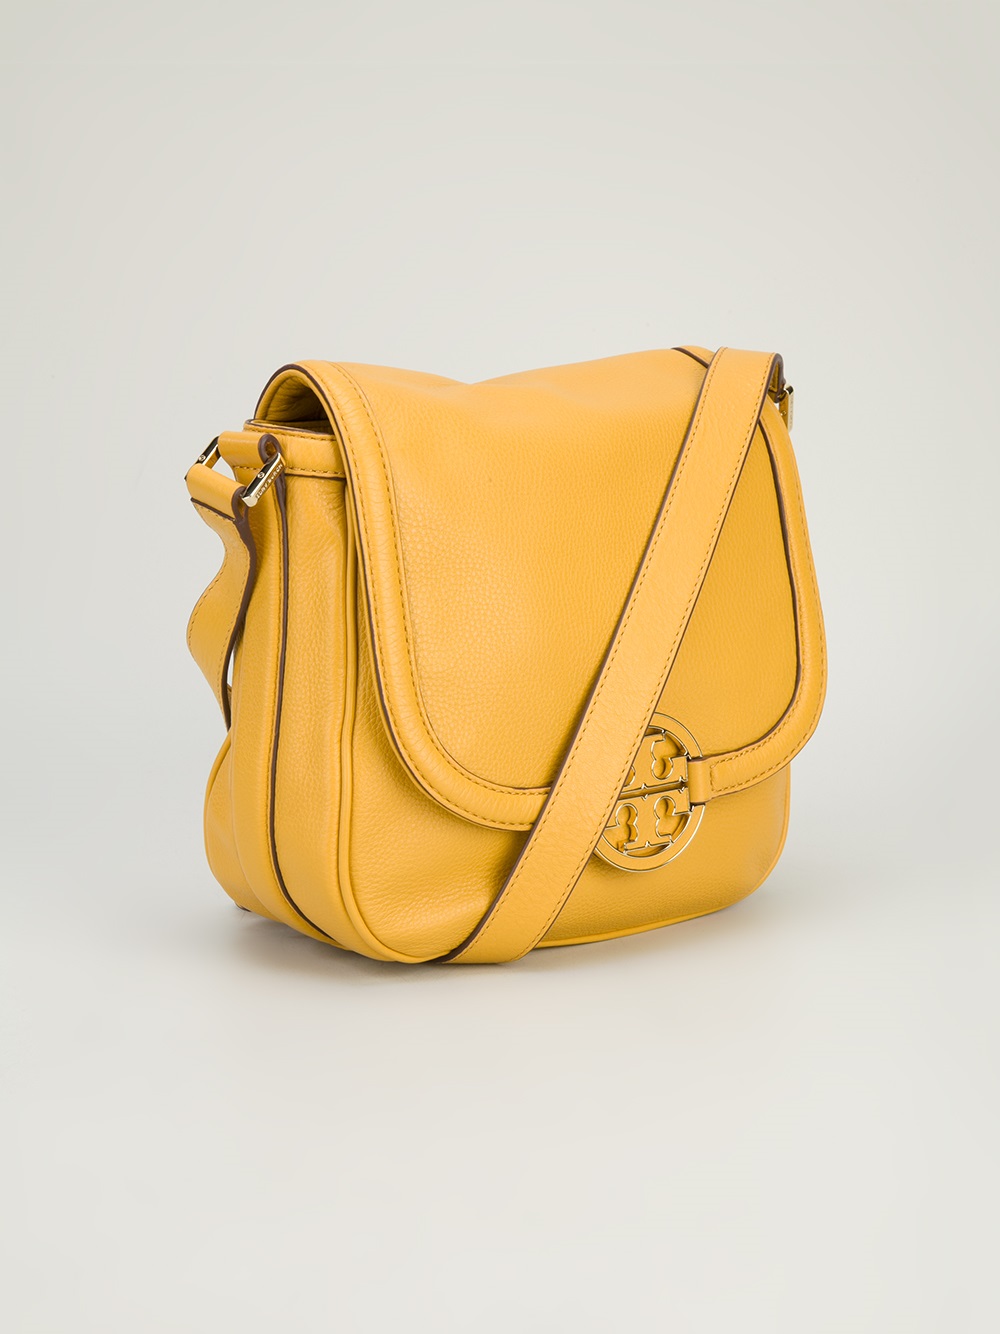 Tory Burch Amanda Round Crossbody Bag in Yellow & Orange (Yellow) - Lyst